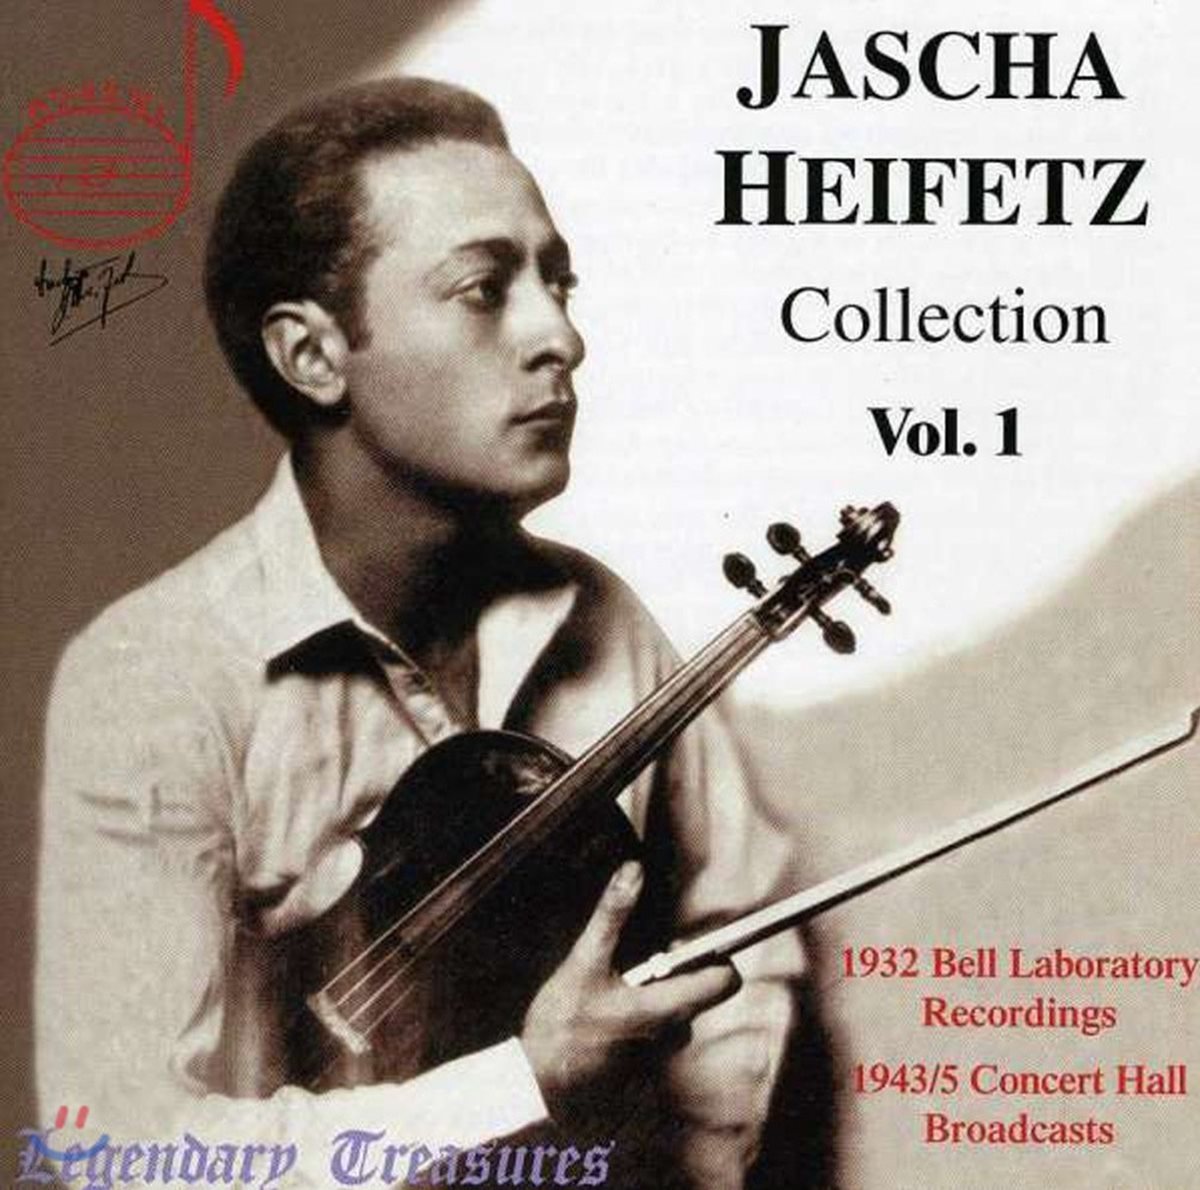 하이페츠 컬렉션 1집 (Jascha Heifetz Collection Vol. 1)